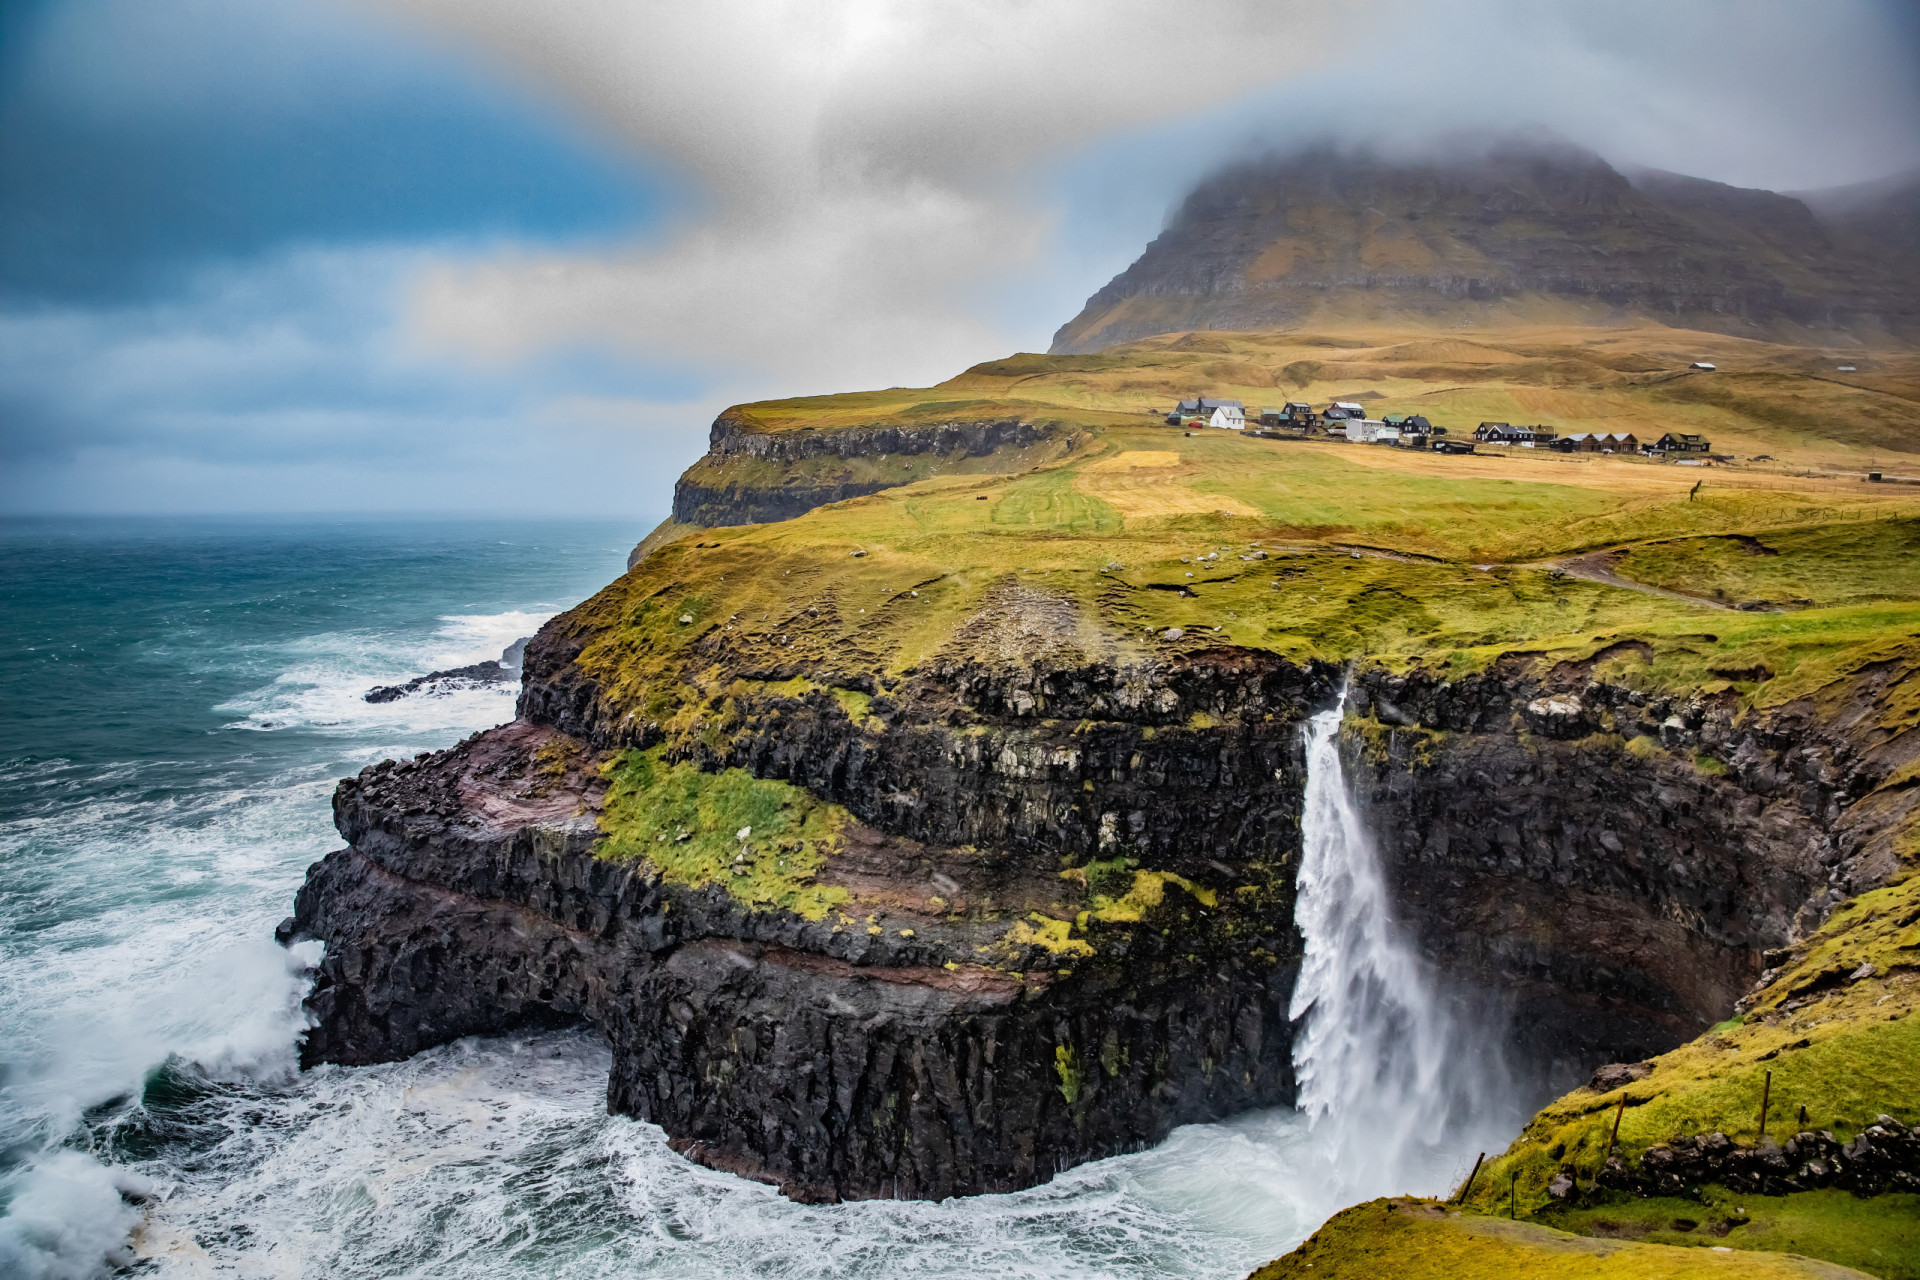 <p>Envie de retourner à l'état sauvage ? La route de la reculée Gásadalur à Tórshavn via Sakson sur les îles Faroe traverse des paysages incroyables, y compris Múlafossur, l'une des plus belles cascades au monde.</p><p>Tu pourrais aussi aimer:<a href="https://www.starsinsider.com/n/420672?utm_source=msn.com&utm_medium=display&utm_campaign=referral_description&utm_content=536732v1"> Meghan Markle retrouve ses habitues au Canada</a></p>